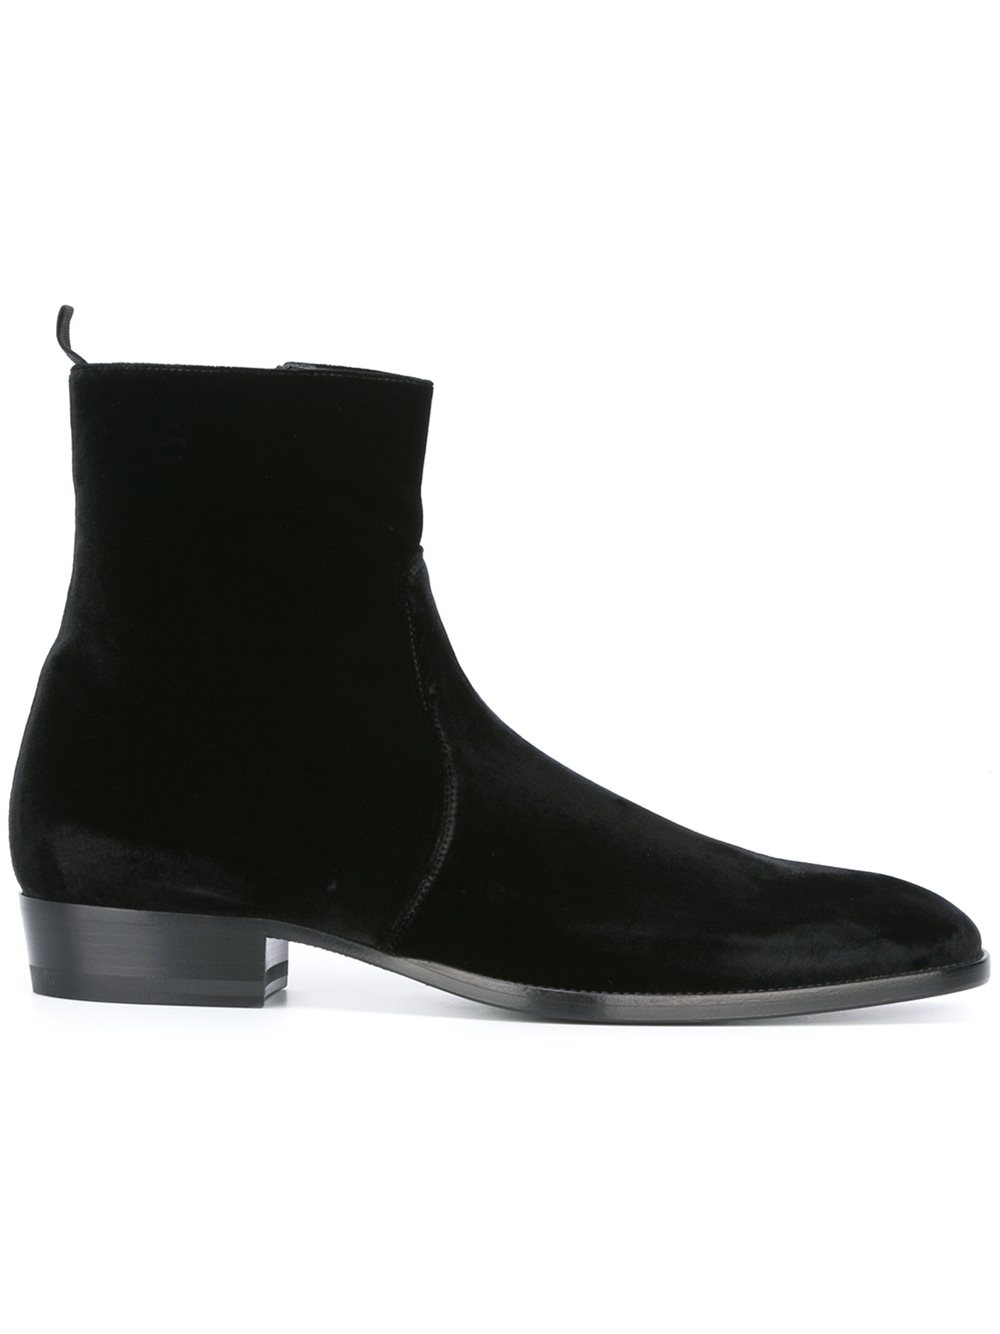 leather boots men black